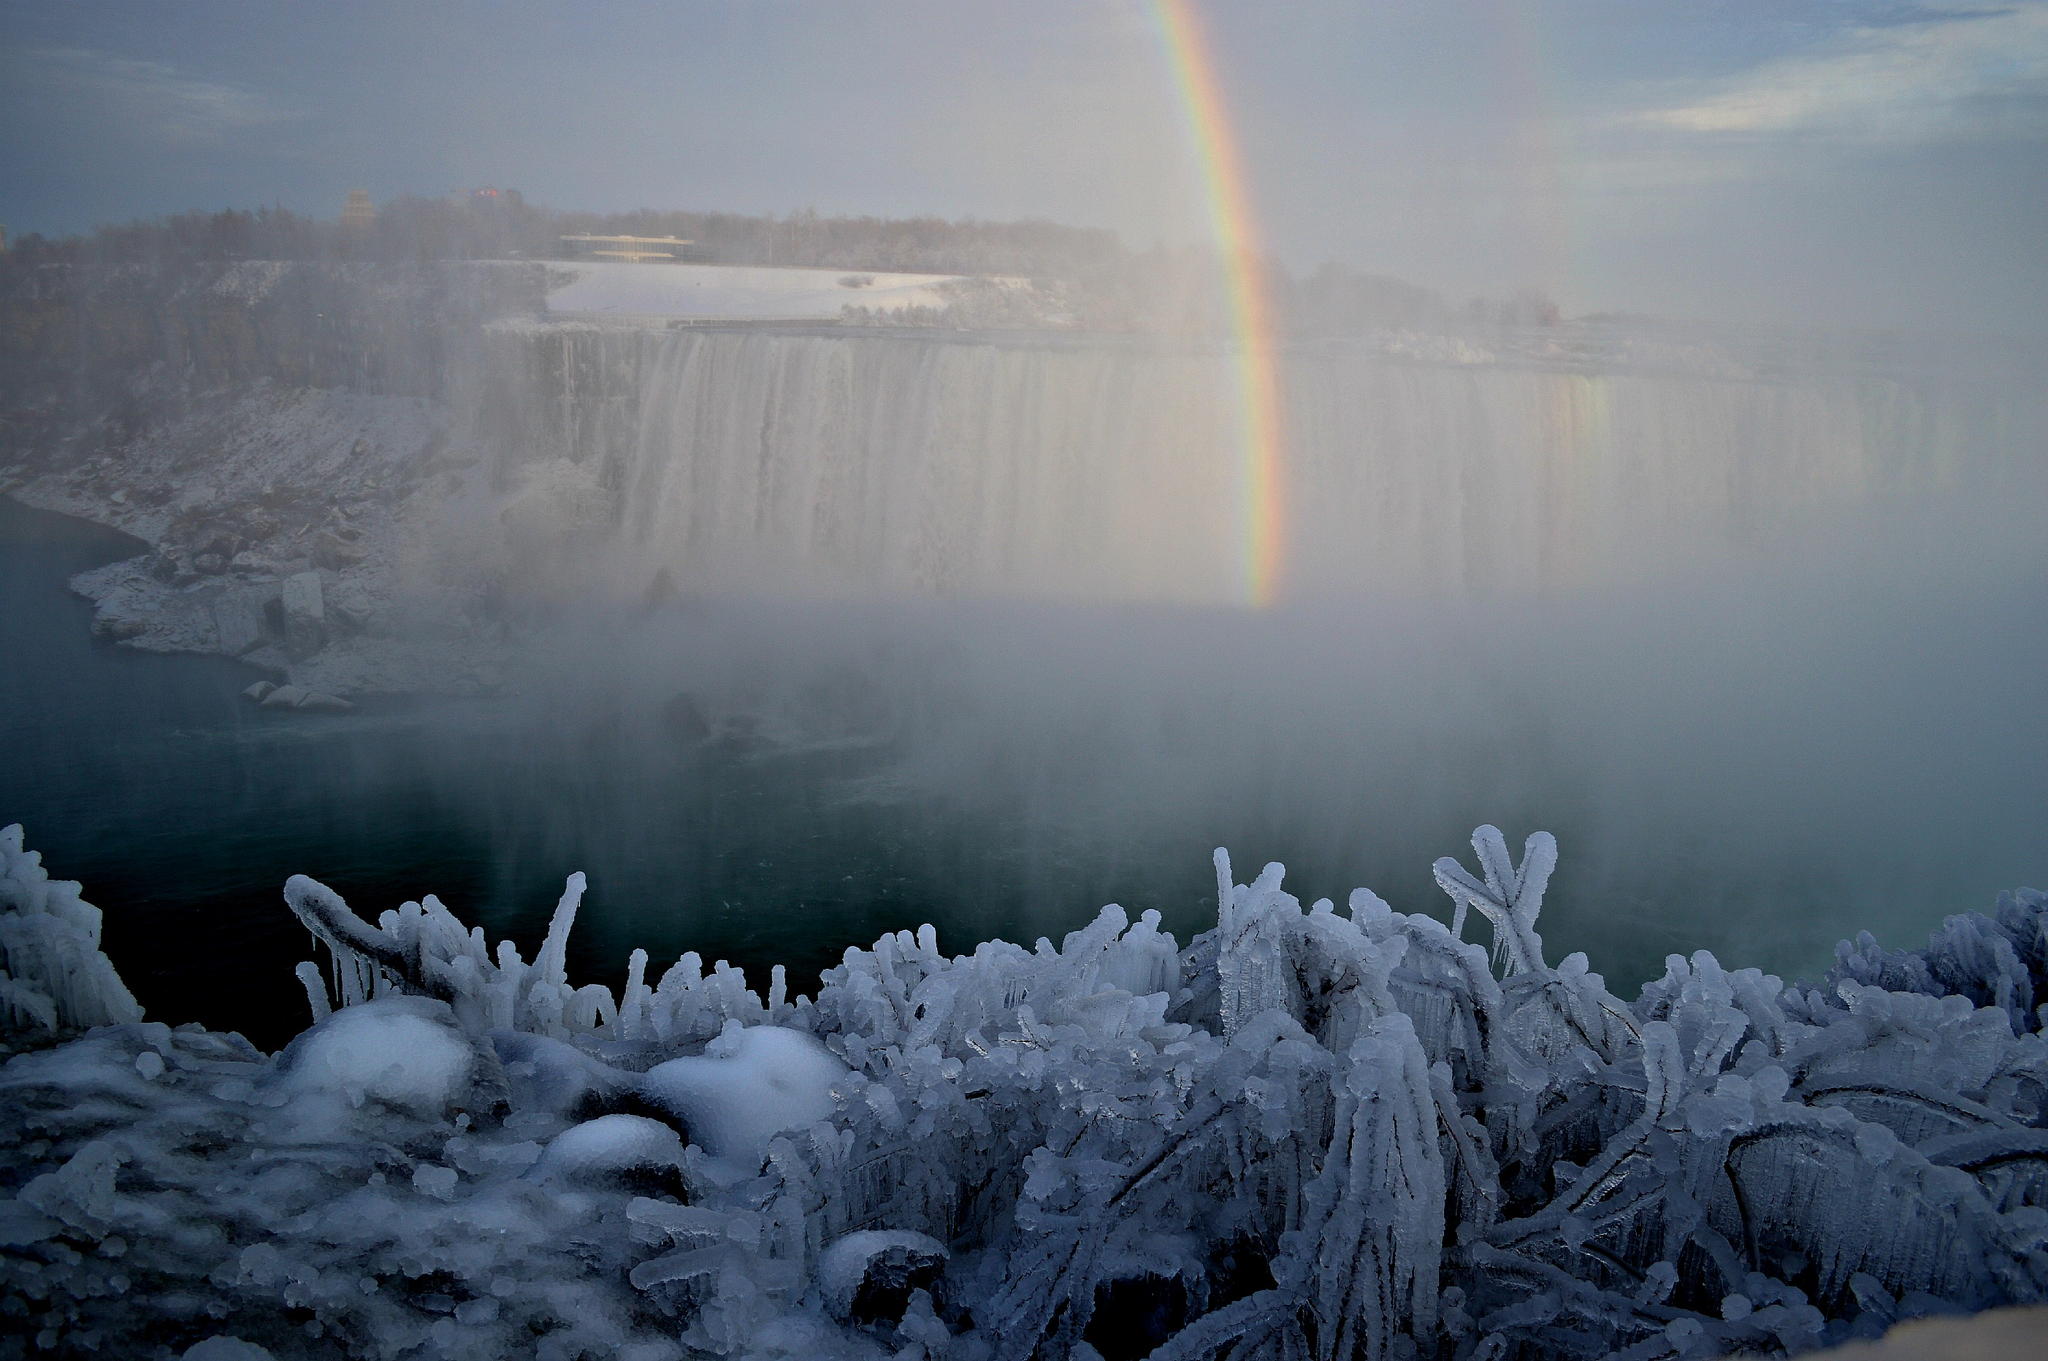 20 Spectacular Images of Frozen Niagara Falls